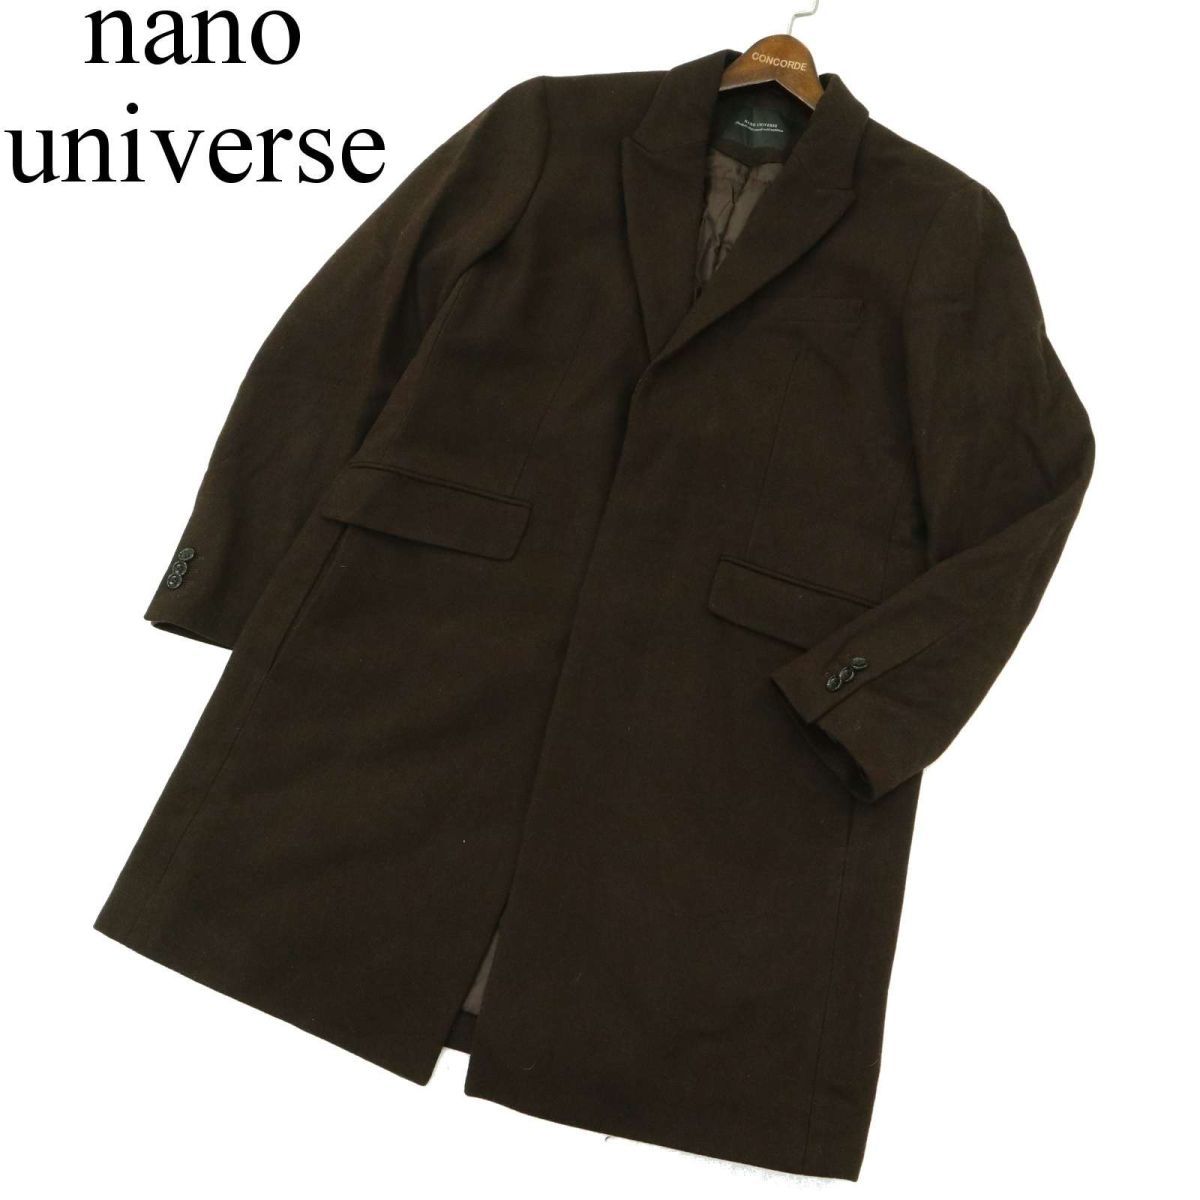 nano universe Nano Universe осень-зима melt n шерсть * с хлопком одиночный Пальто Честерфилд Sz.XL мужской большой размер A3T14389_C#N